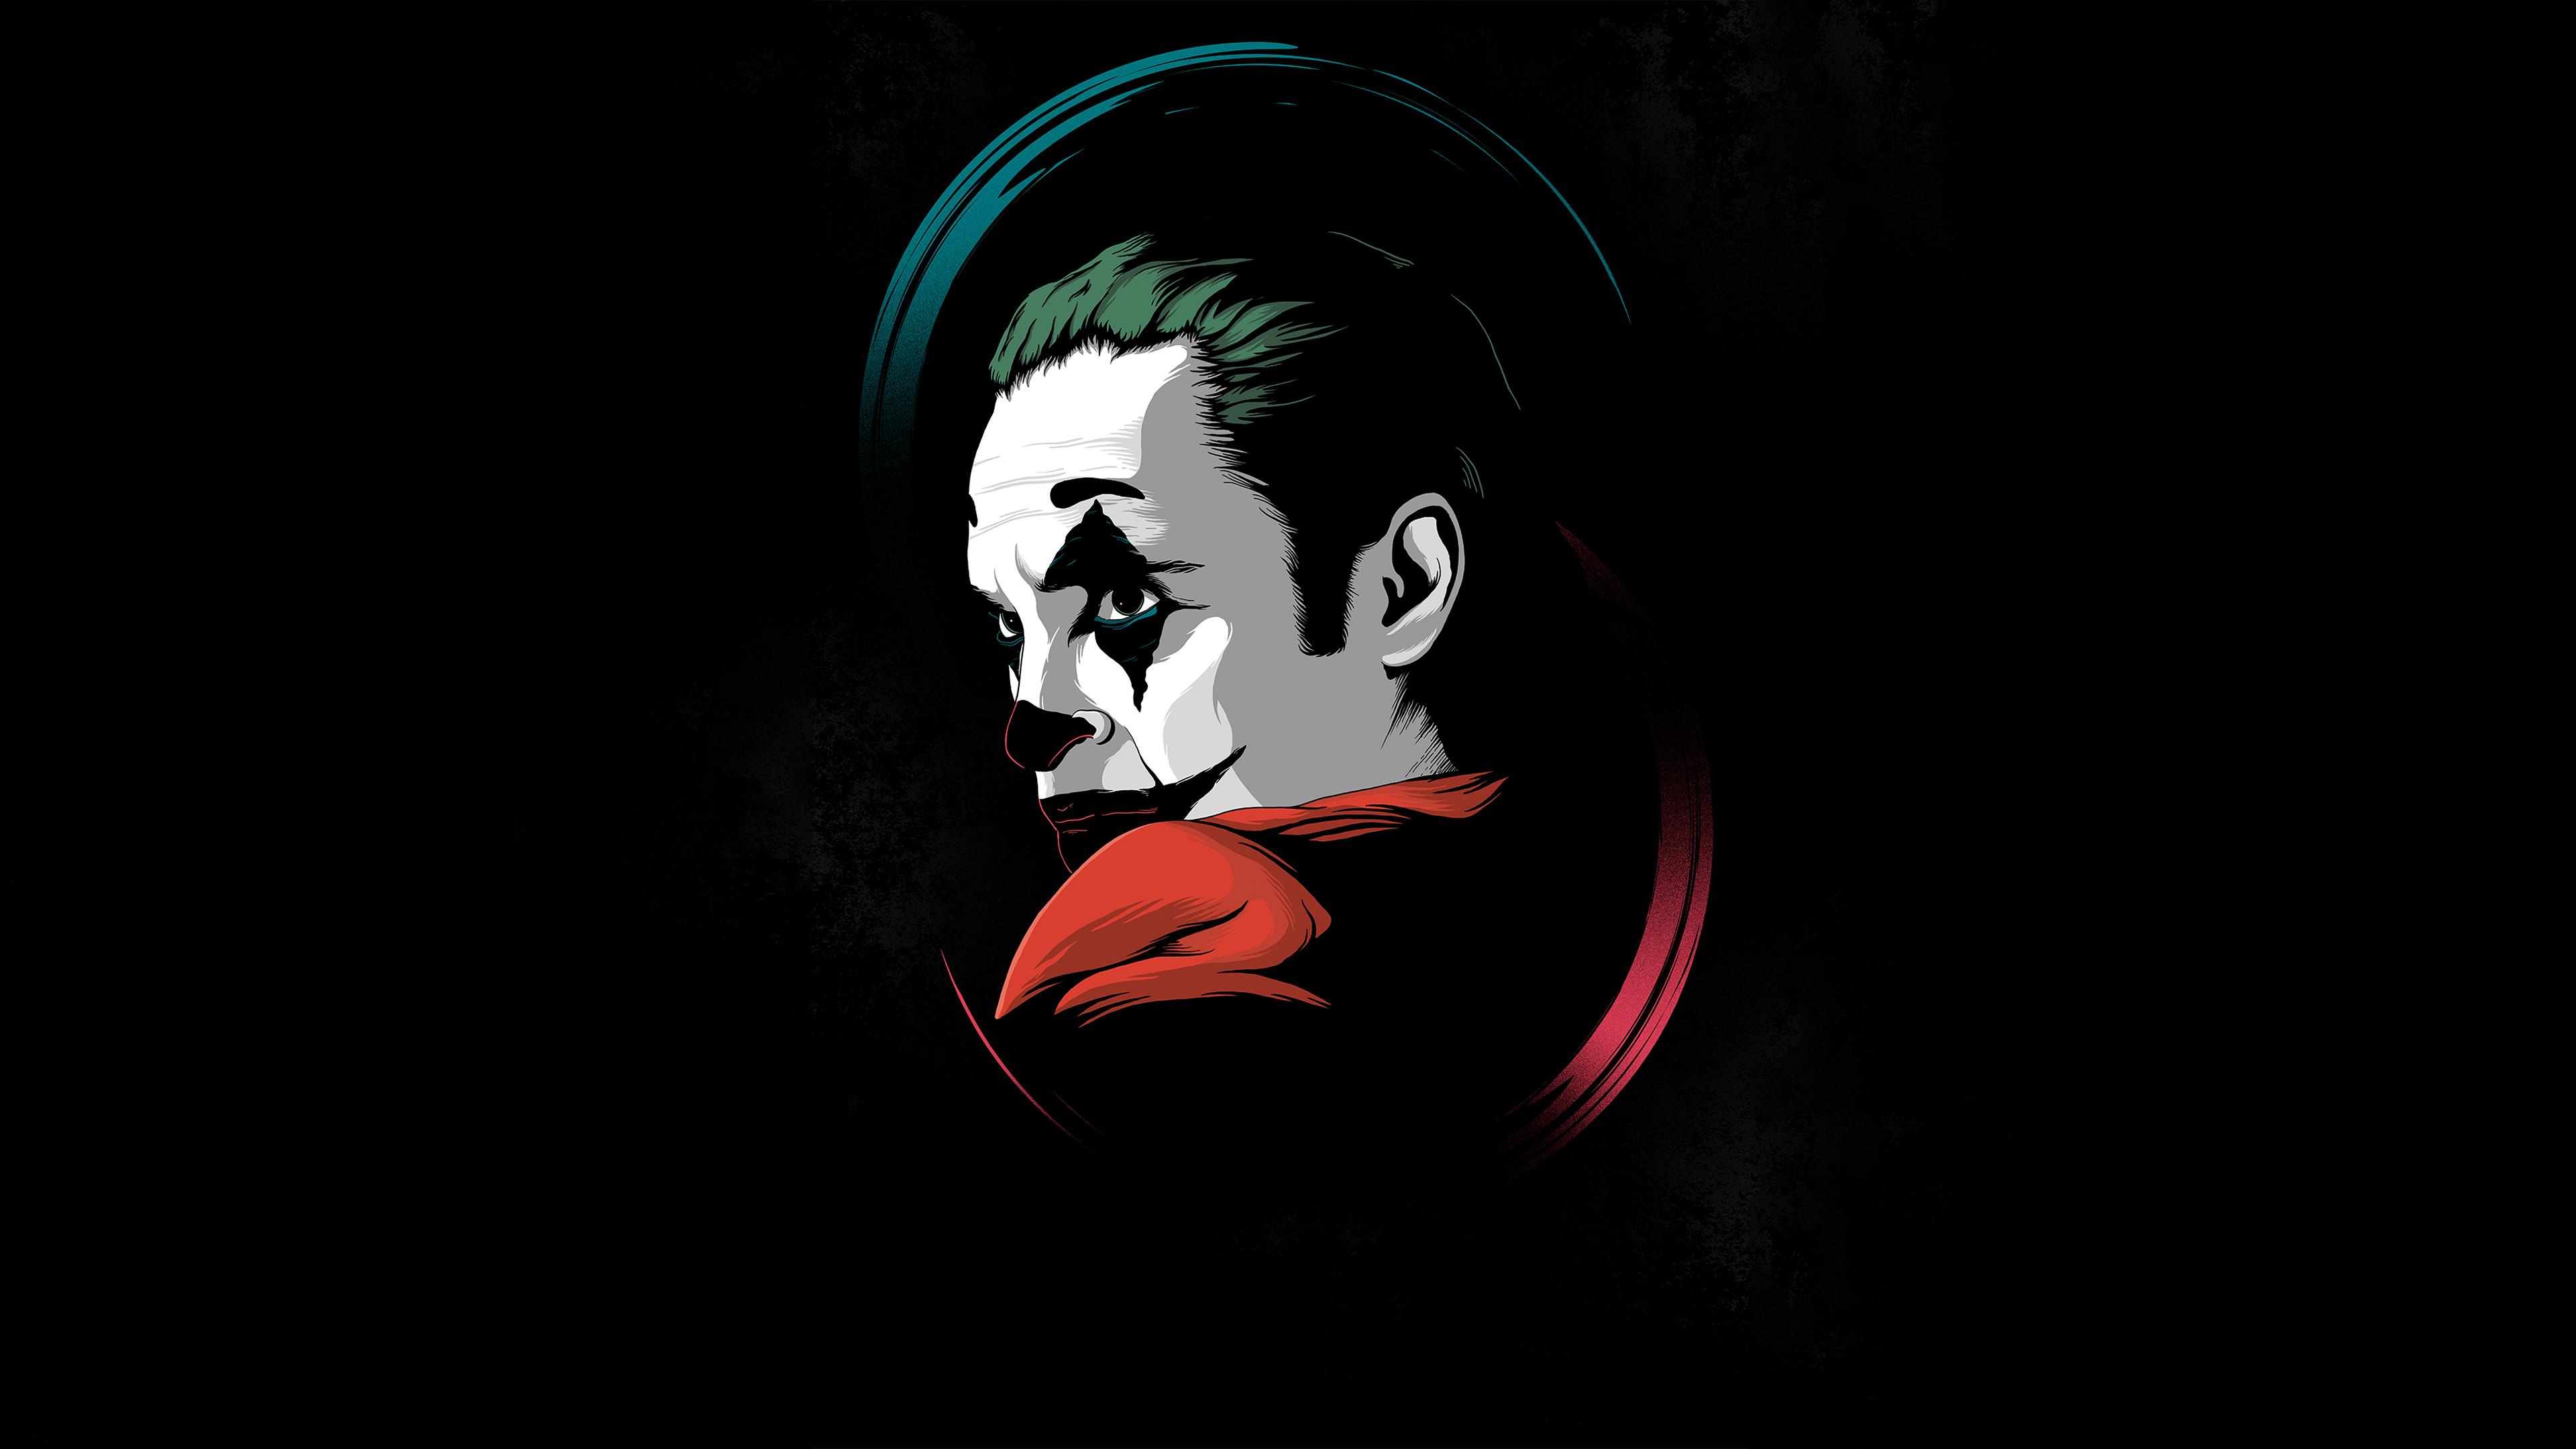 Joker Movie Minimal, HD Superheroes, 4k Wallpaper, Image